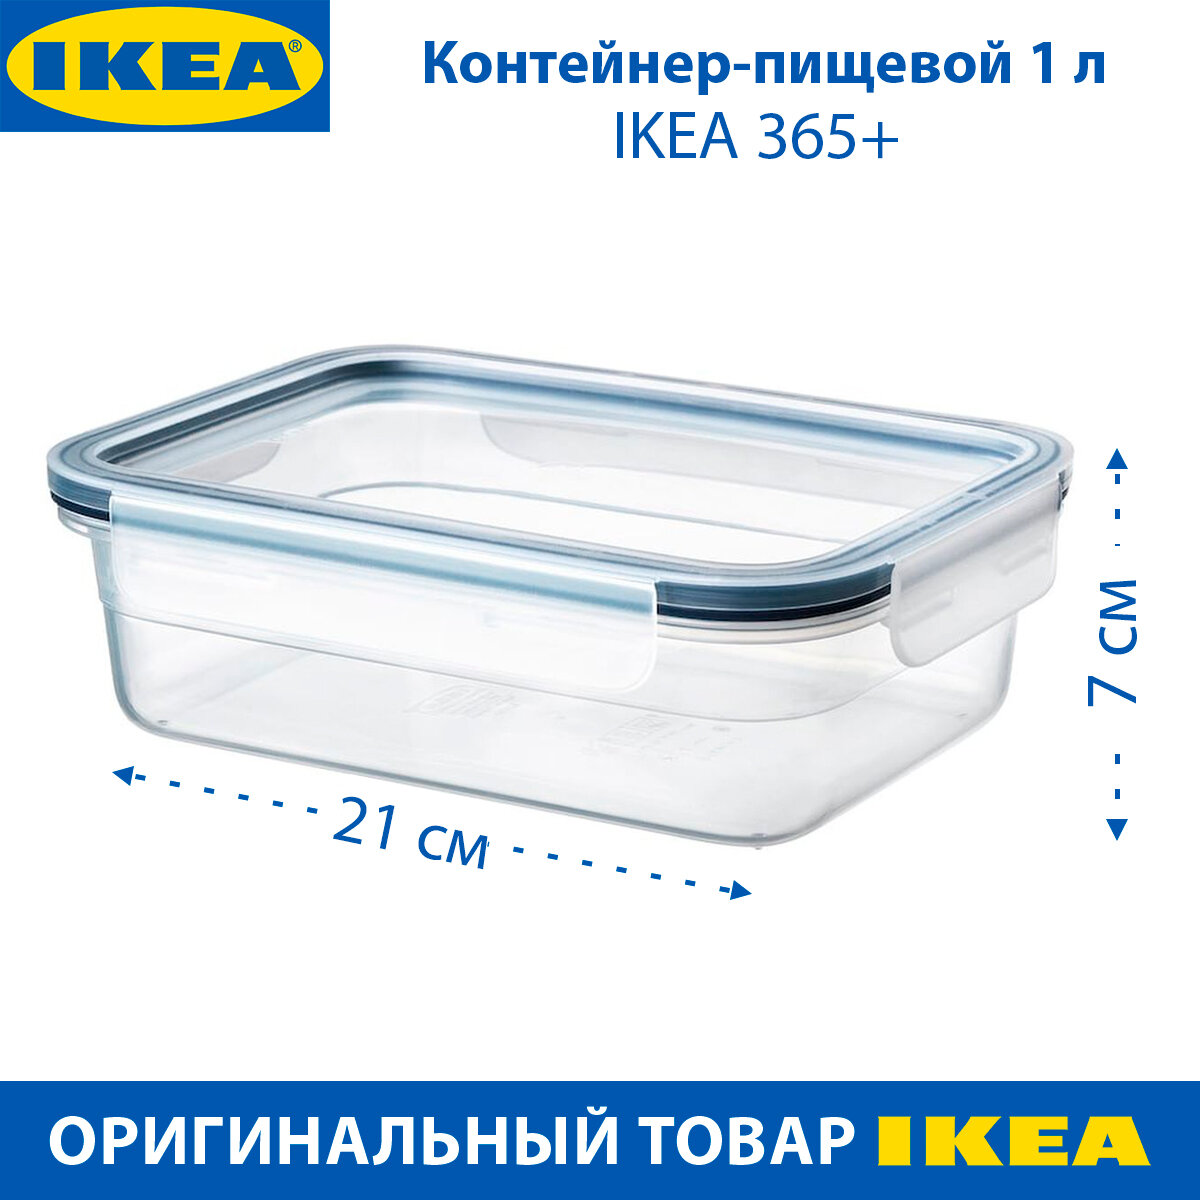 Контейнер пищевой IKEA - 365+, с крышкой, 1 л, прямоугольный, пластик, 1 шт